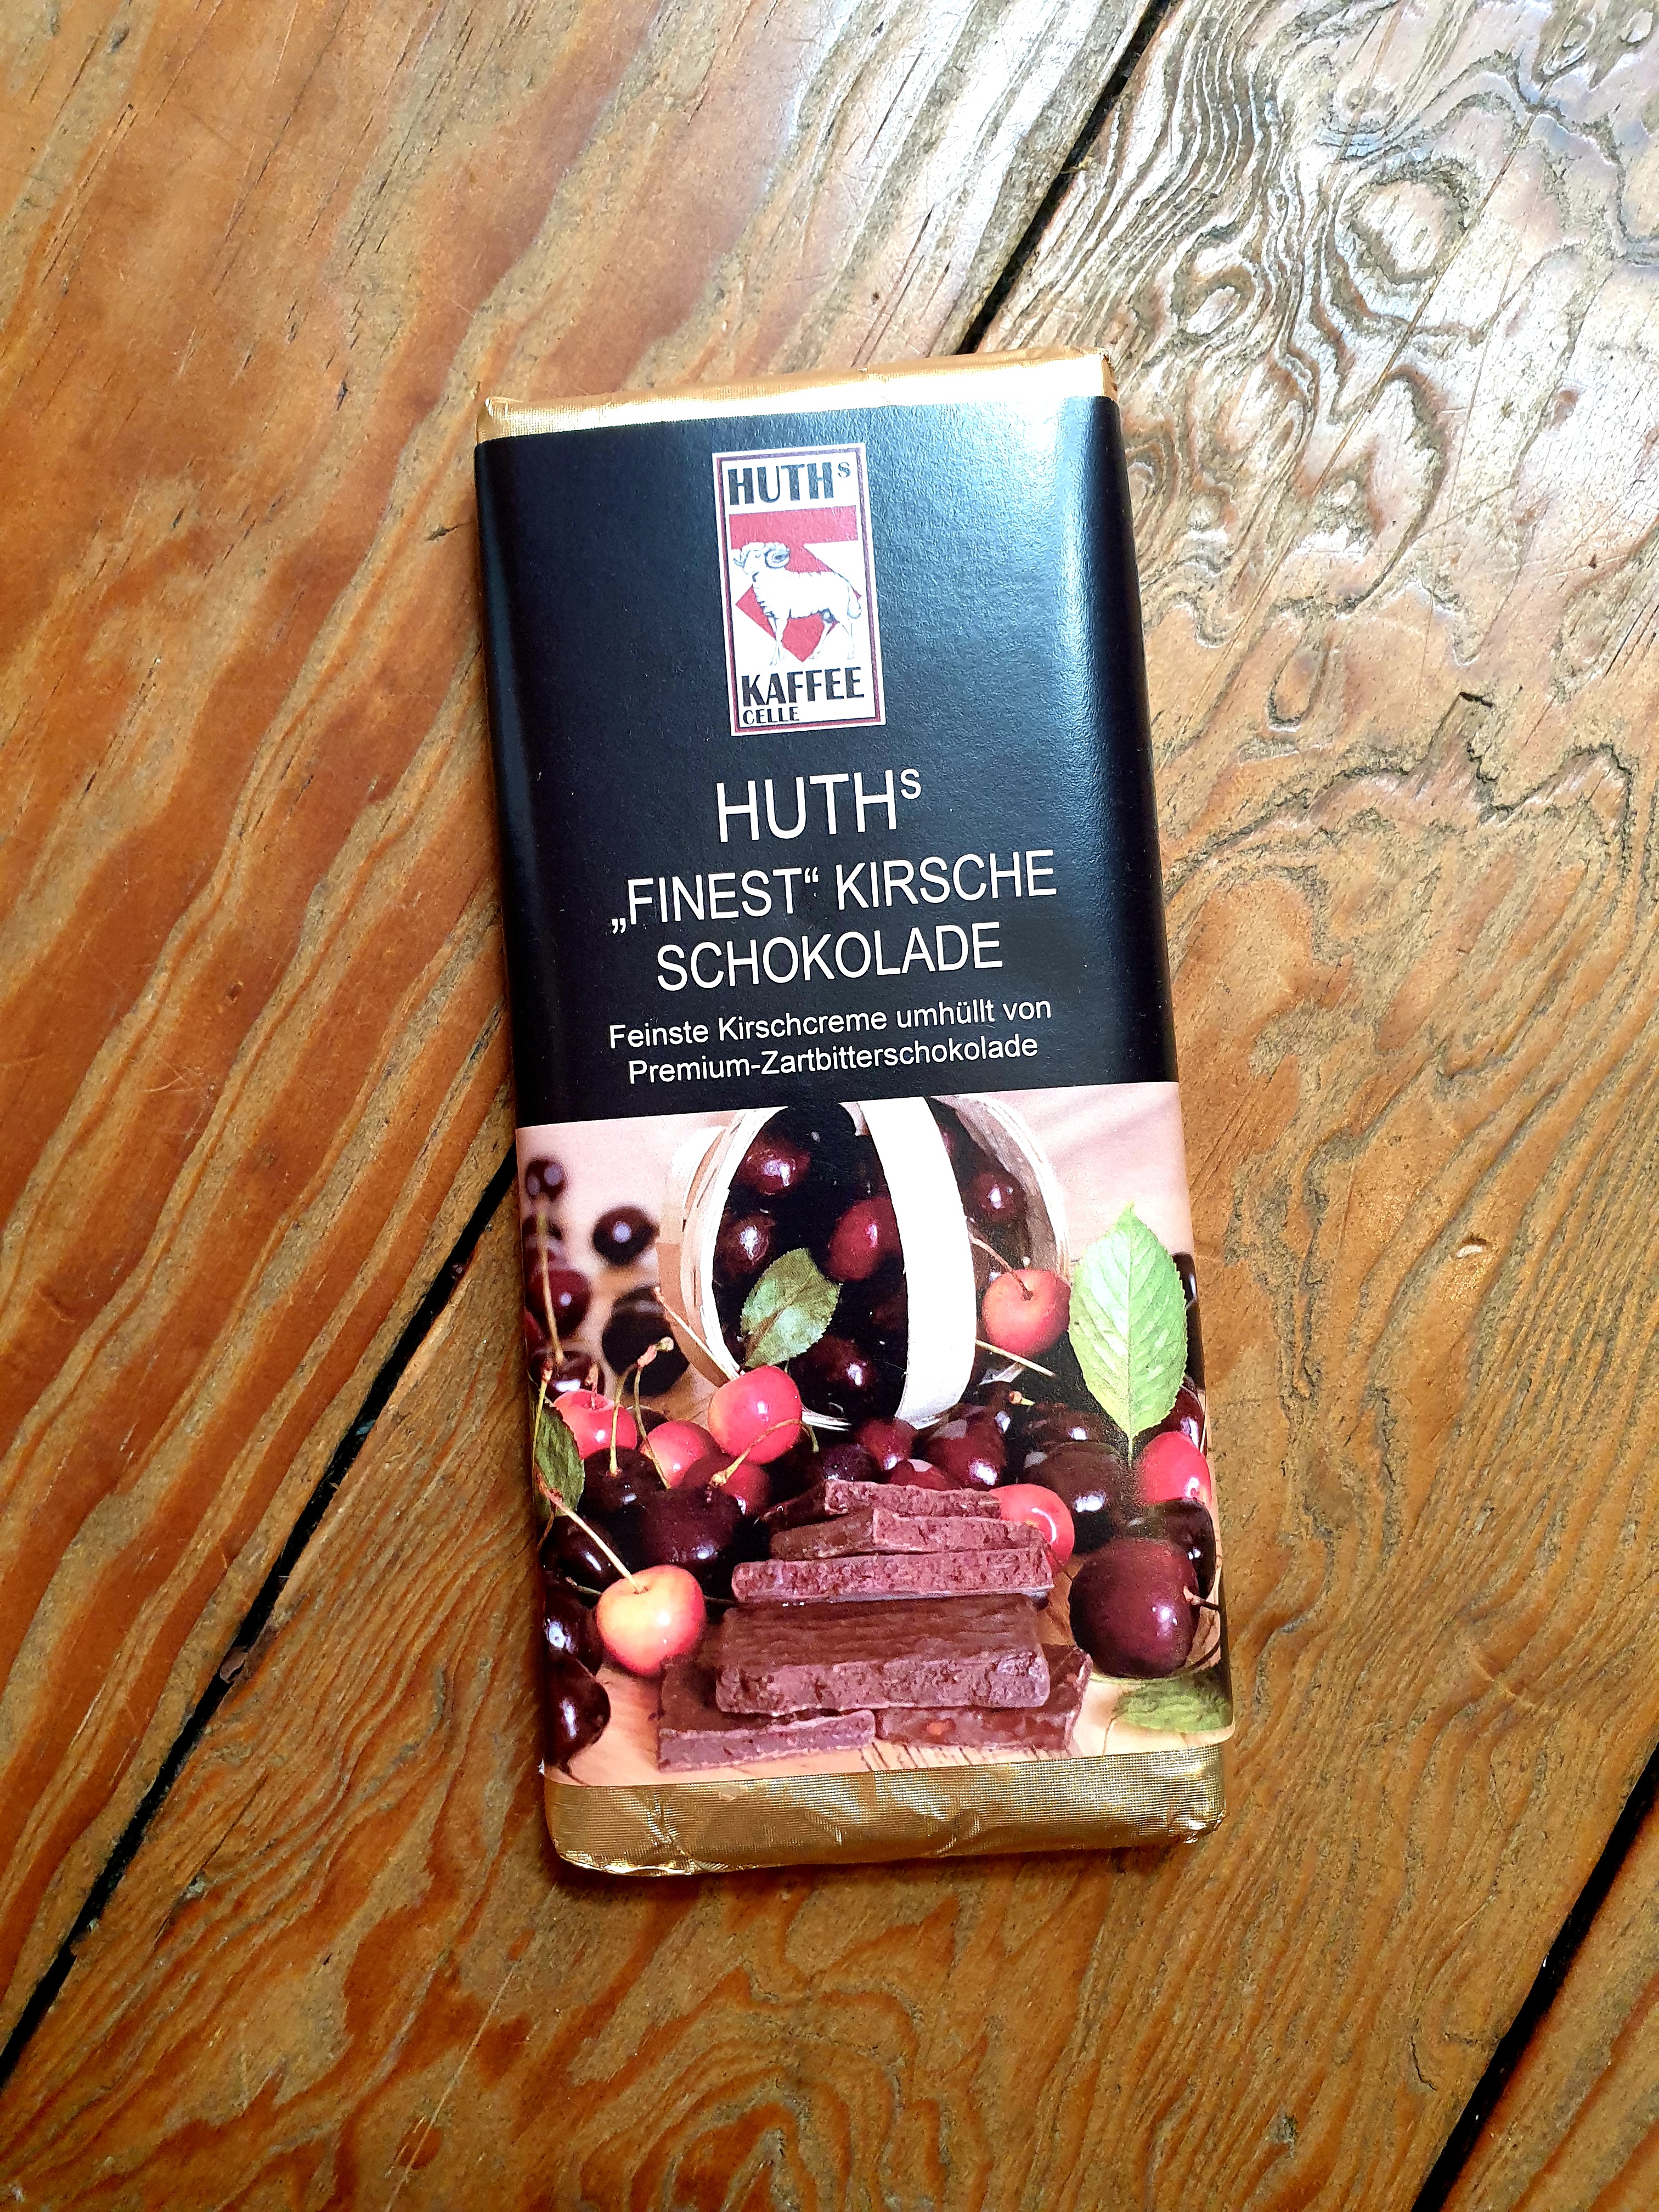 Huth's Schokolade "Finest" Kirsche  - AKTUELL NICHT LIEFERBAR, NACHSCHUB ist unterwegs